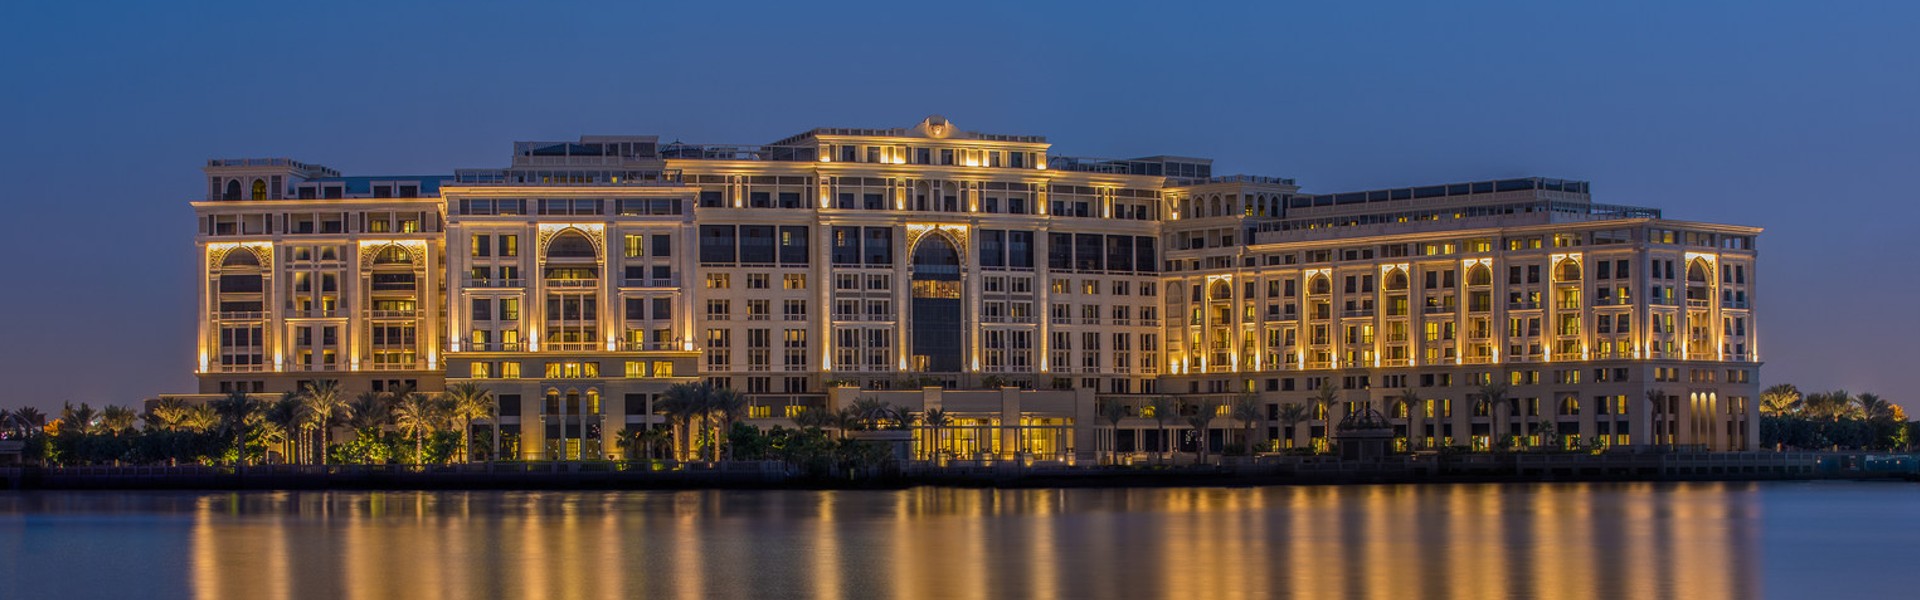 Palazzo versace Dubai